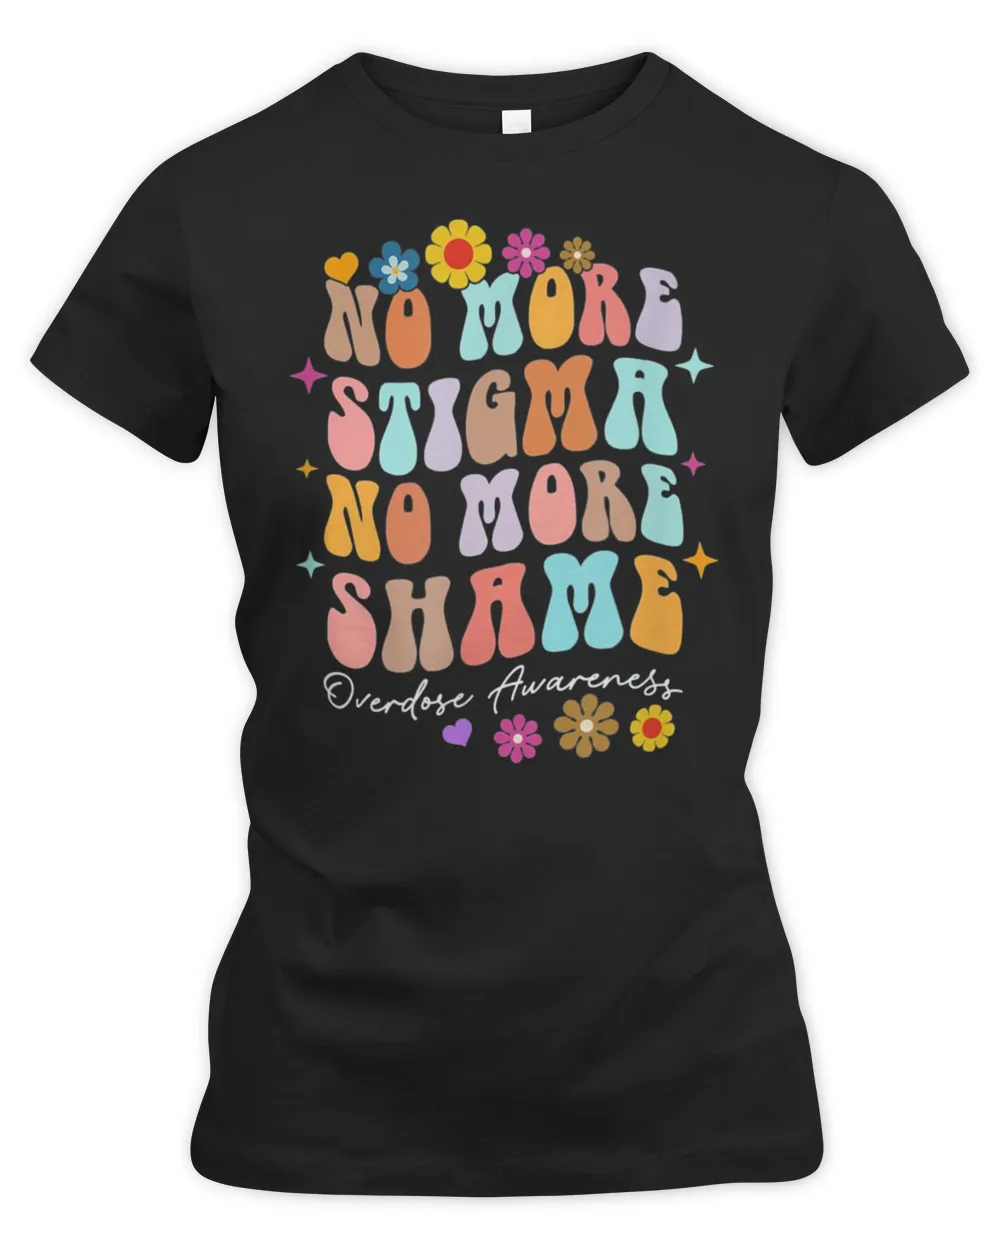 No More Stigma & Shame Overdose Awareness Recovery Inspired T-Shirt